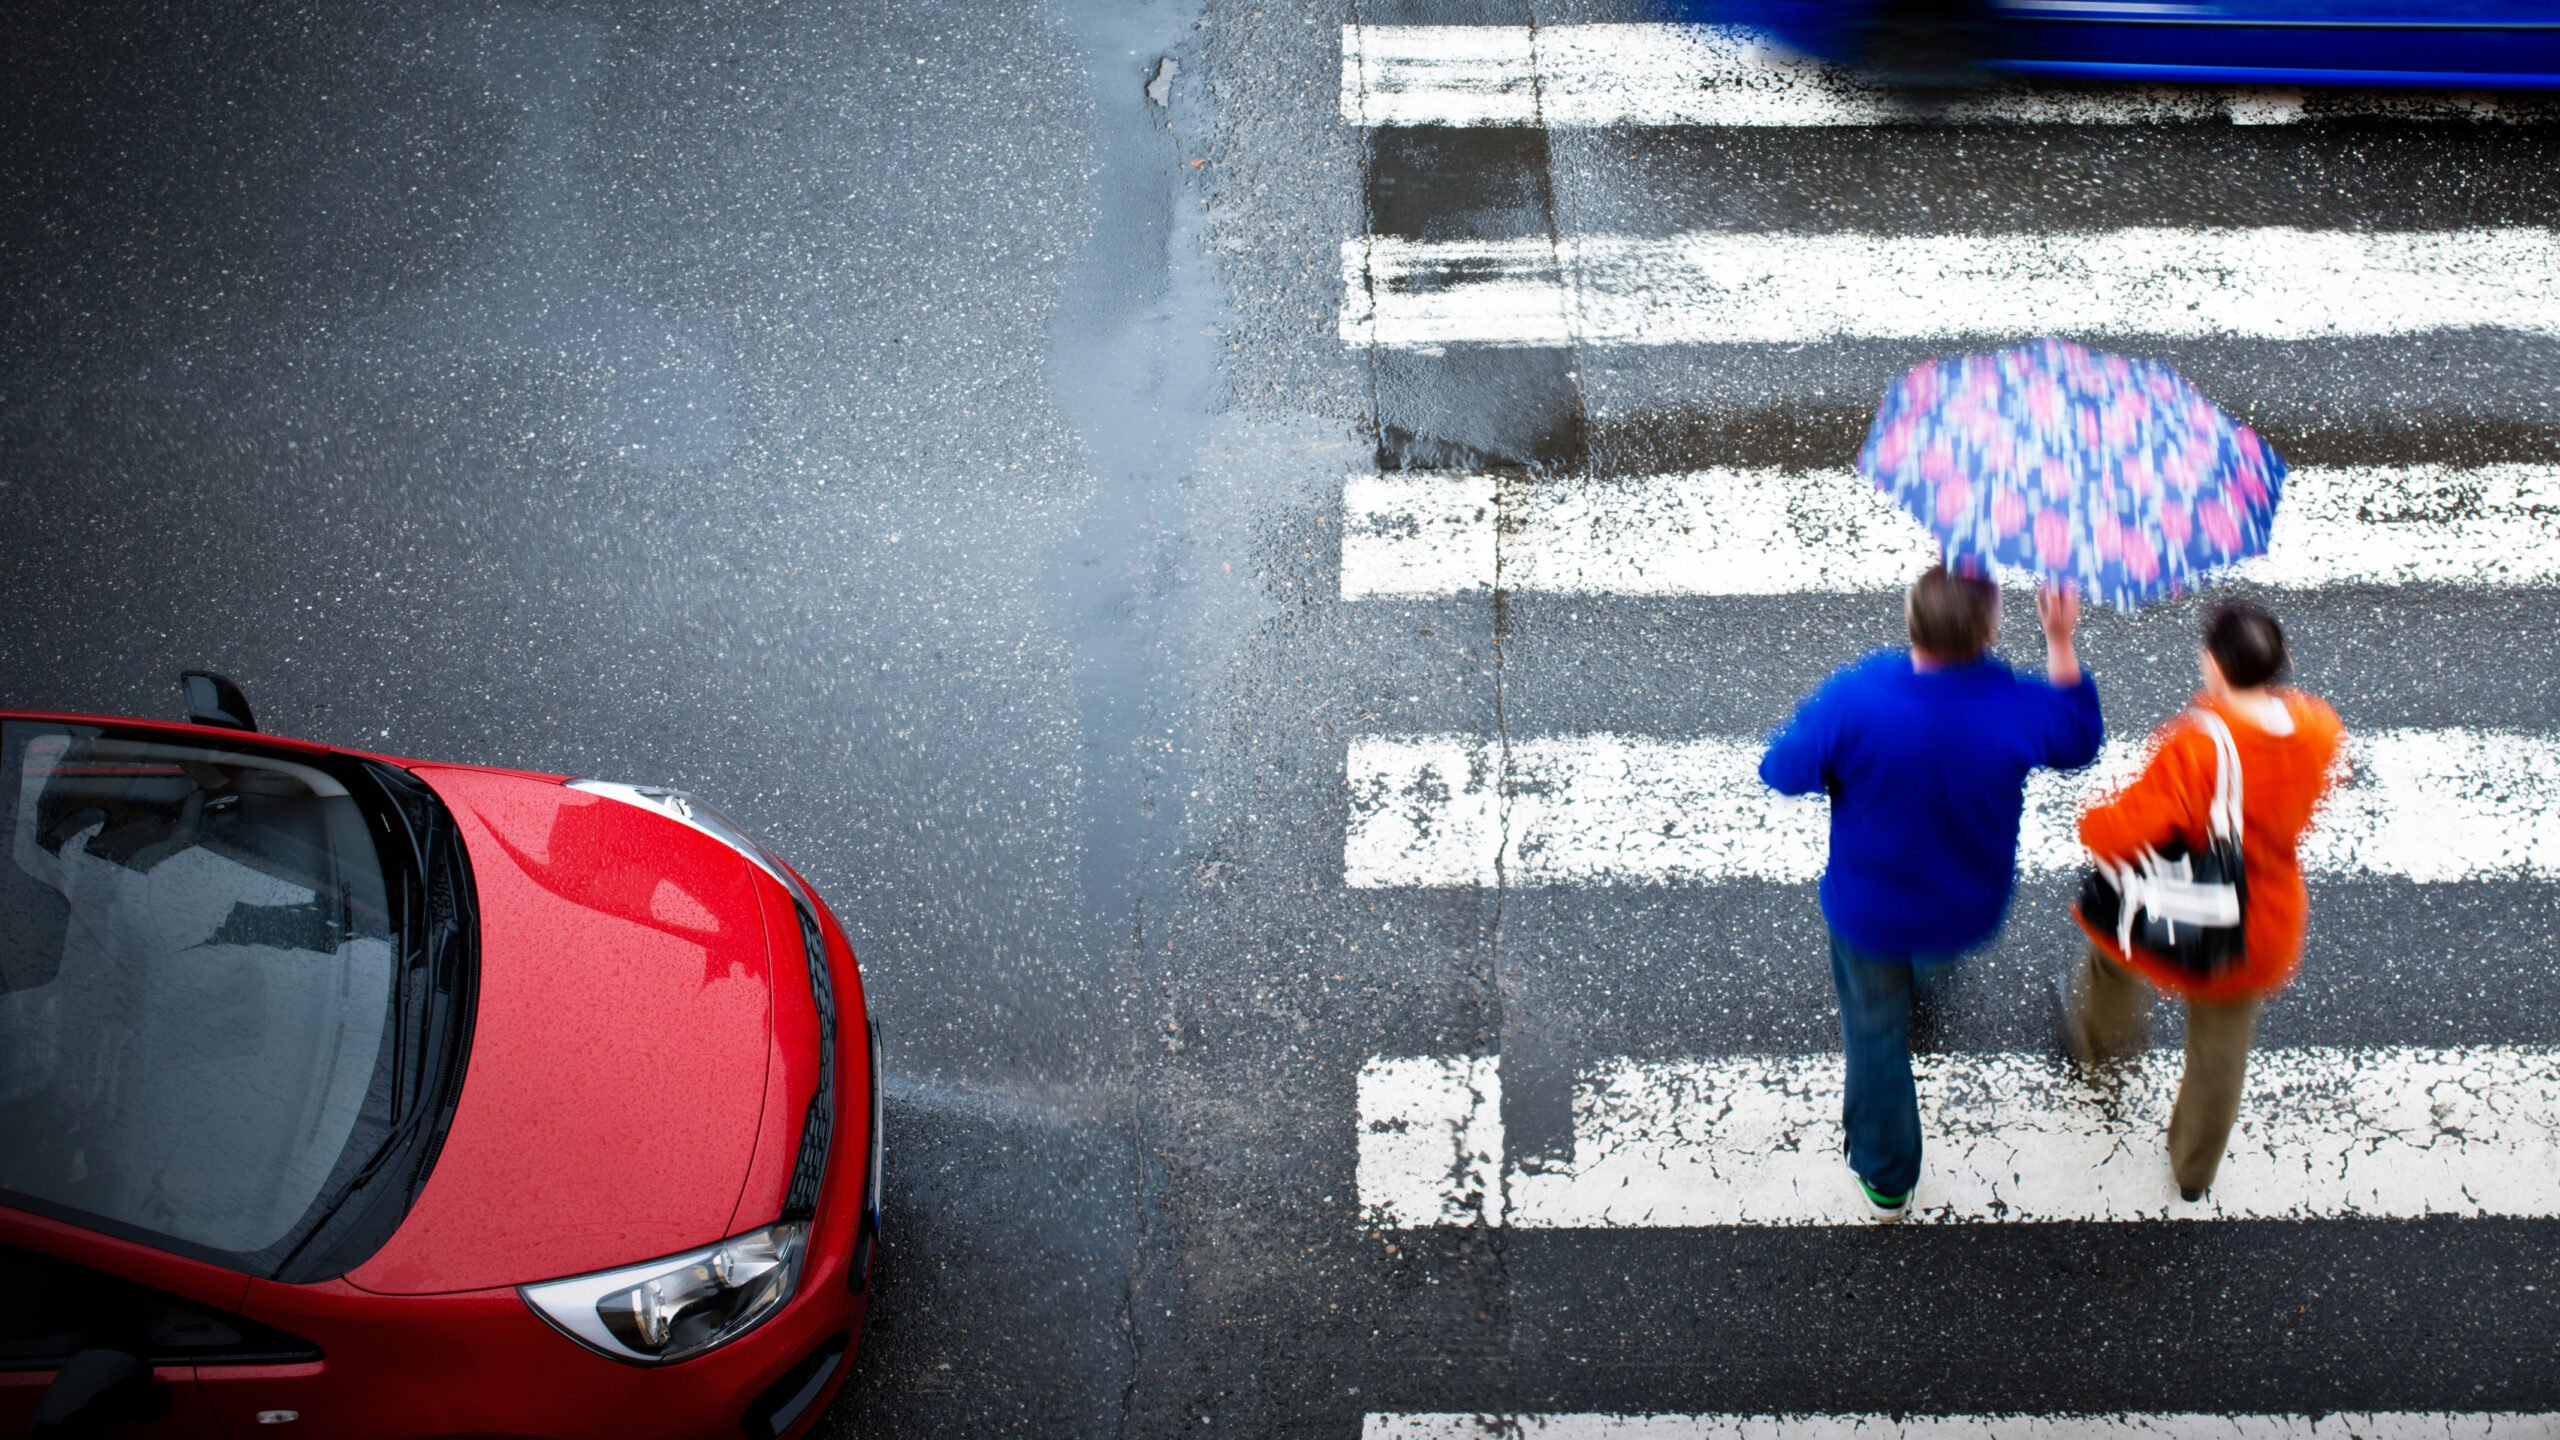 Widok z góry na przejście dla pieszych w deszczu, gdzie dwóch ludzi w kurtkach przechodzi przez pasy trzymając kolorowy parasol, a obok nich stoi czerwony samochód.